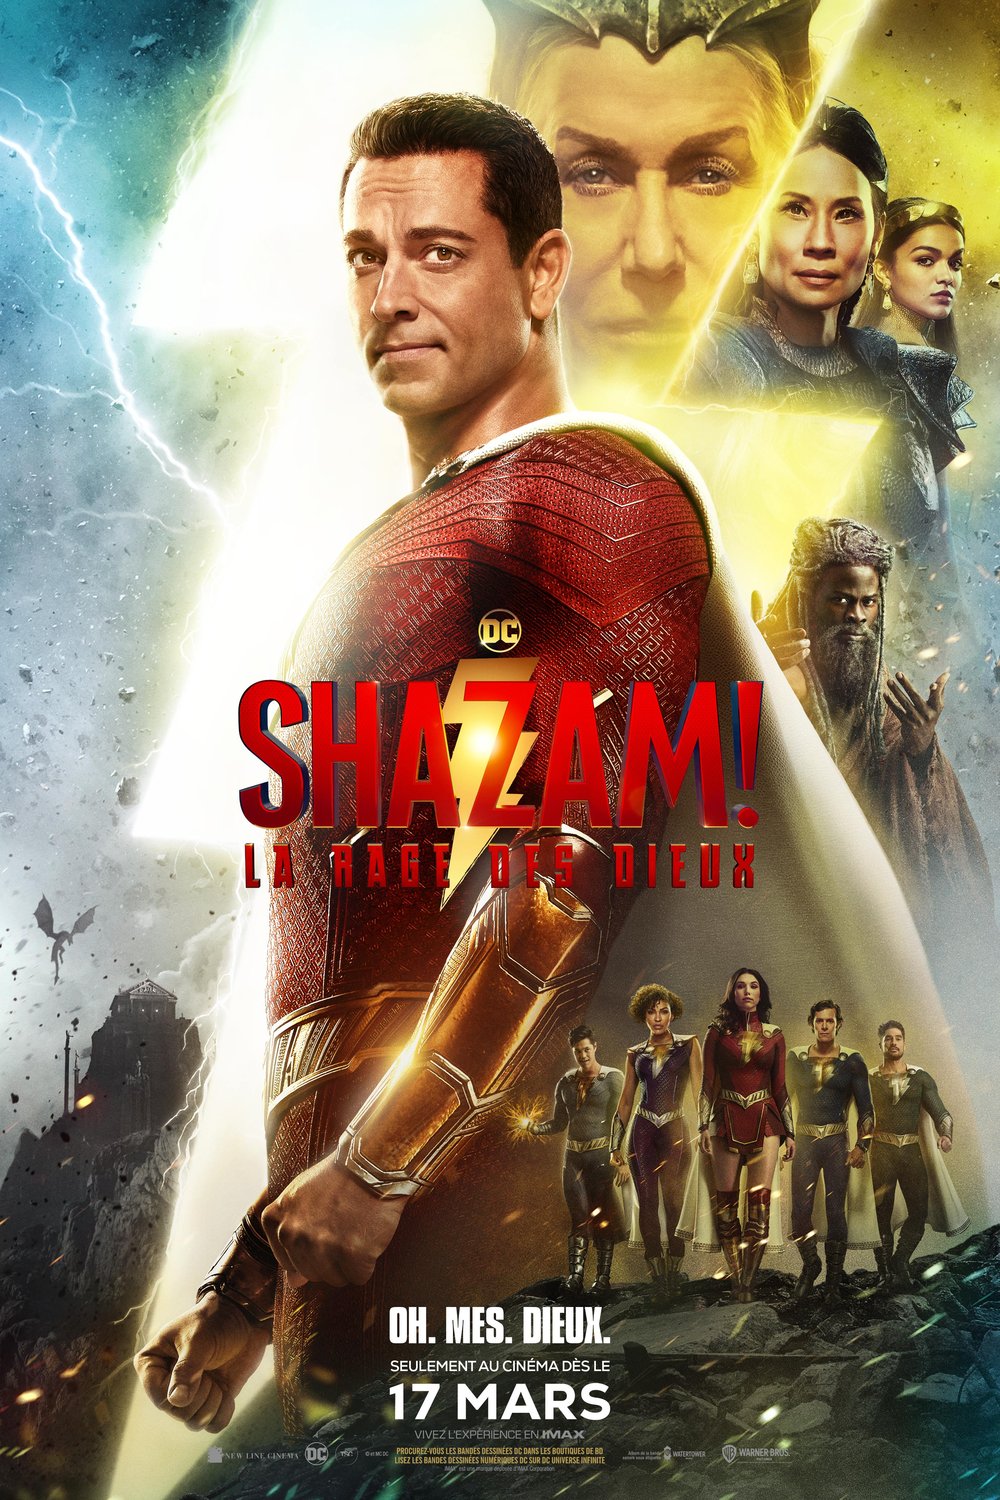 Poster of the movie Shazam! La rage des dieux